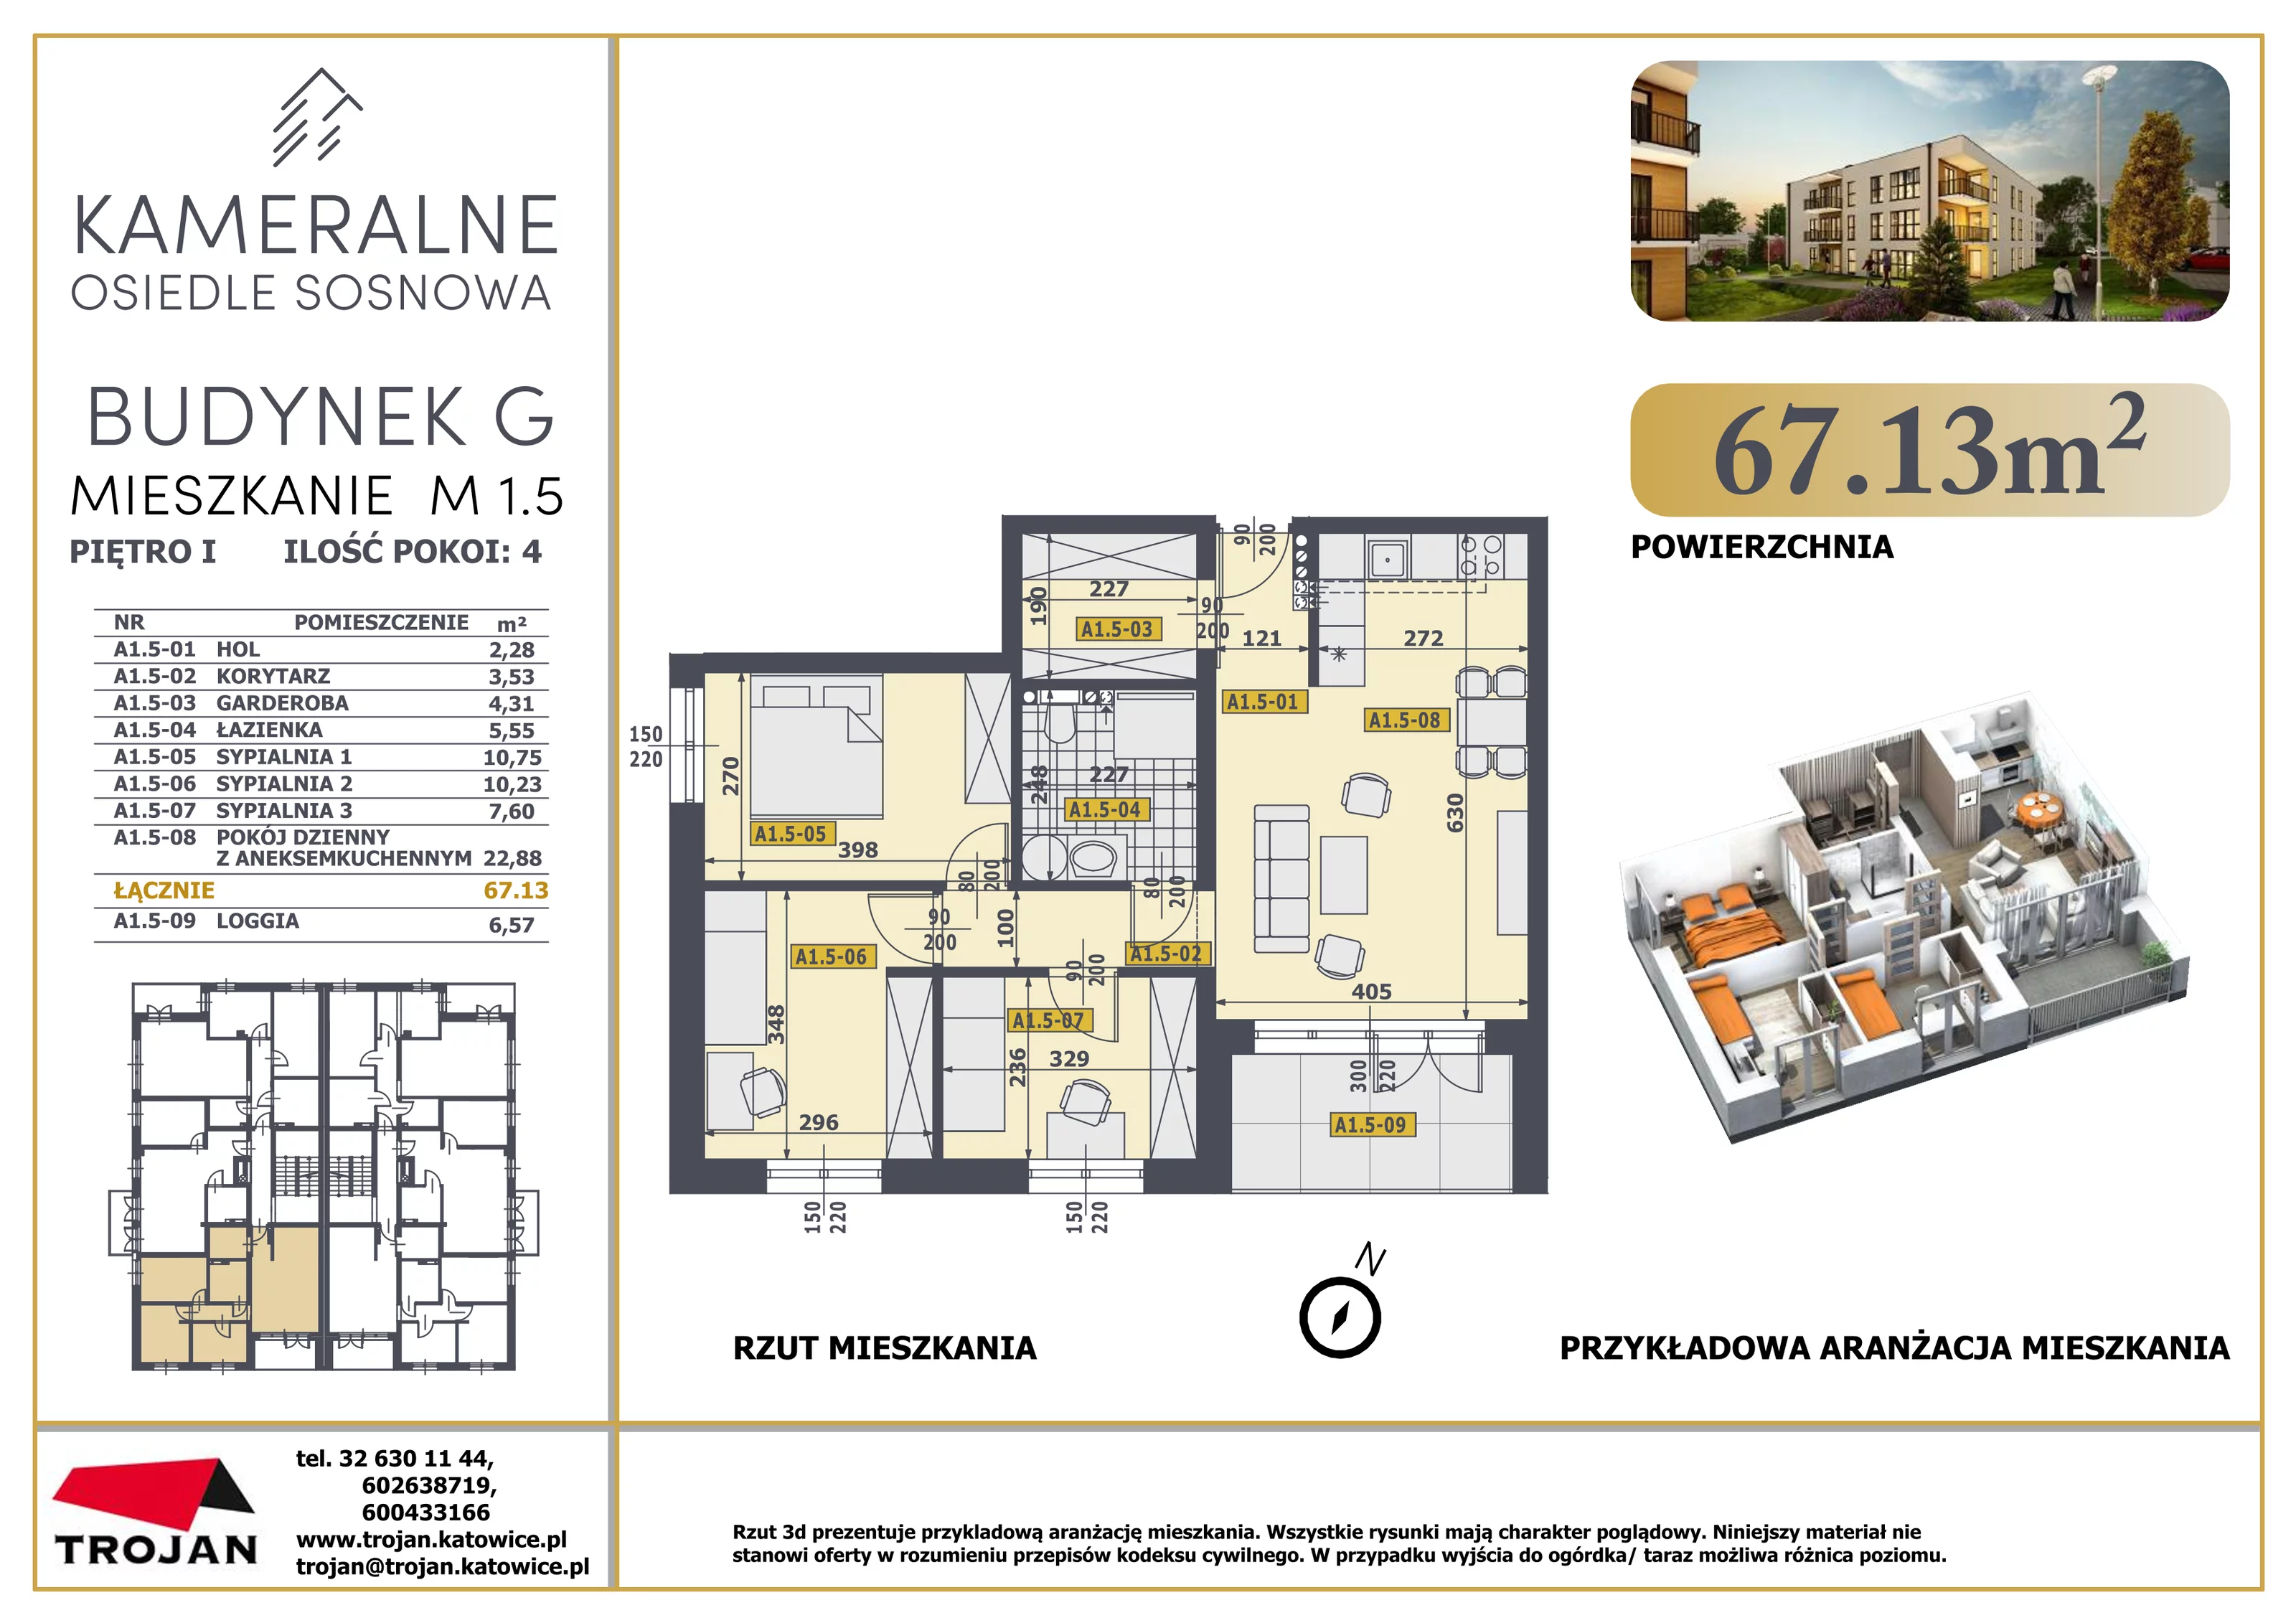 Mieszkanie 67,13 m², piętro 1, oferta nr M 1.5, Osiedle Sosnowa, Rybnik, Paruszowiec-Piaski, ul. Sosnowa 20